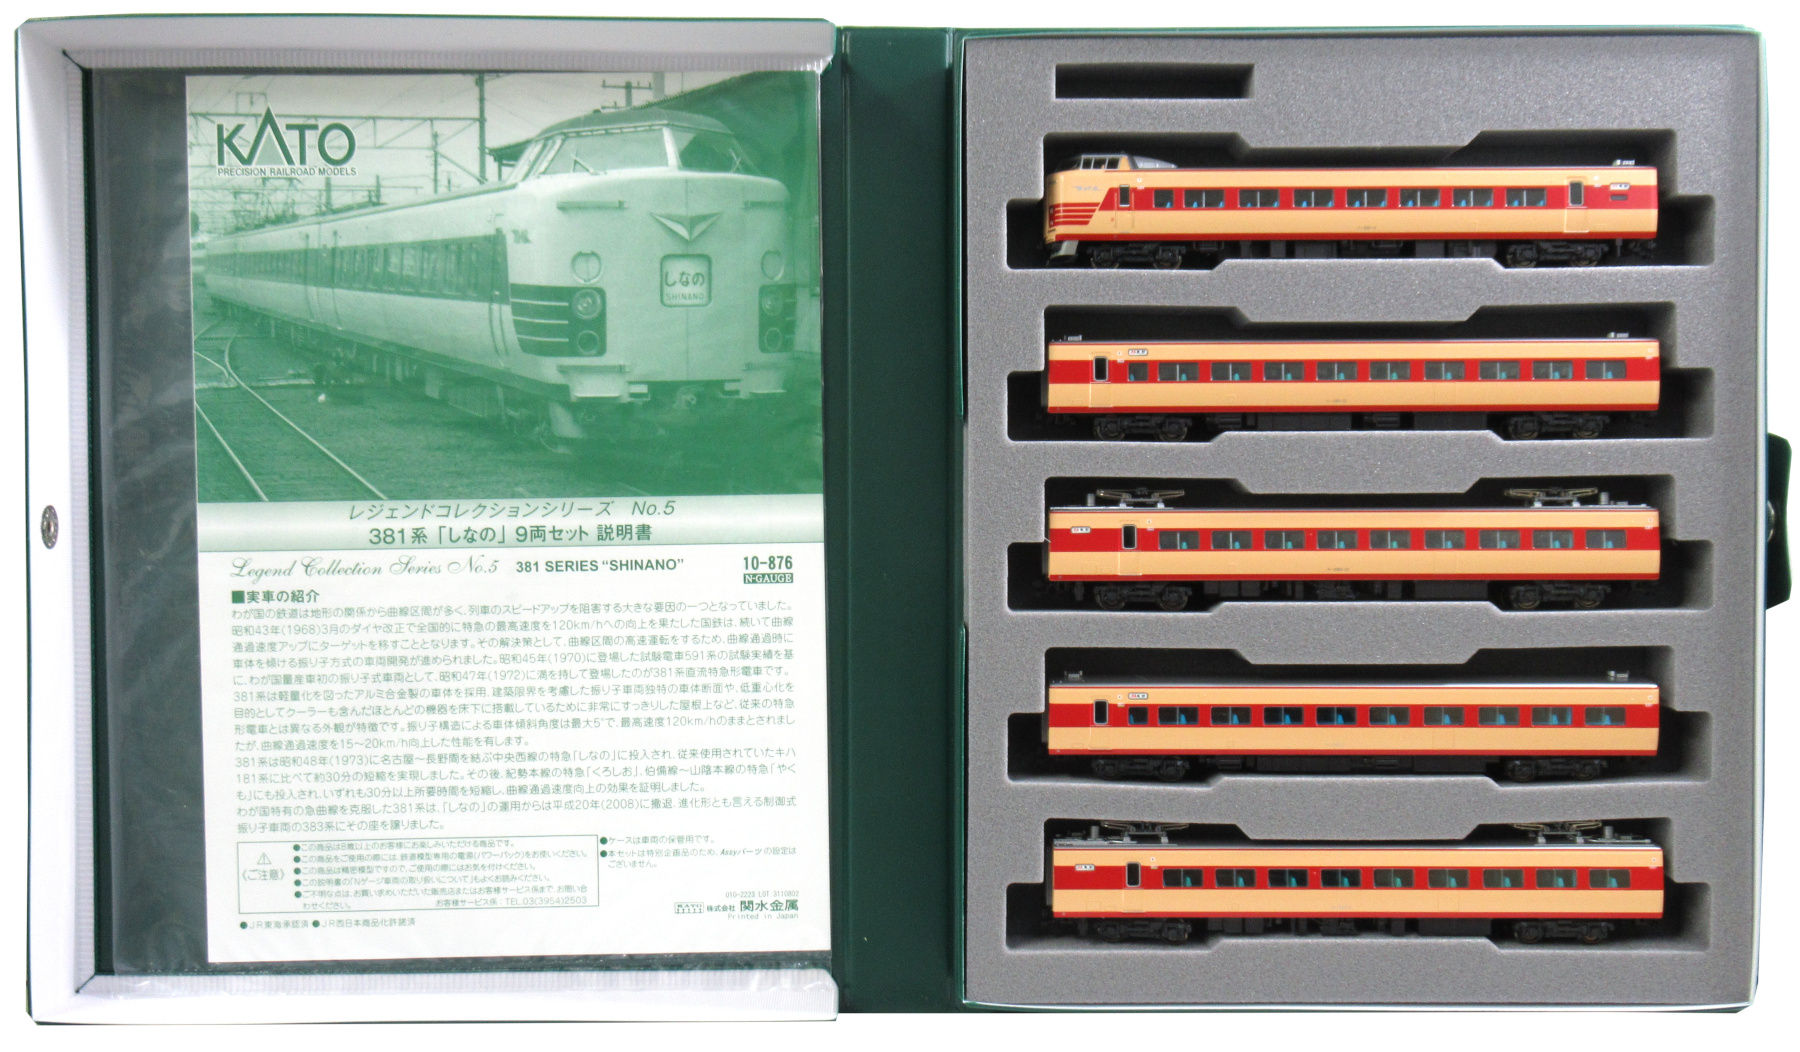 公式]鉄道模型(10-876381系「しなの」9両セット)商品詳細｜KATO(カトー 